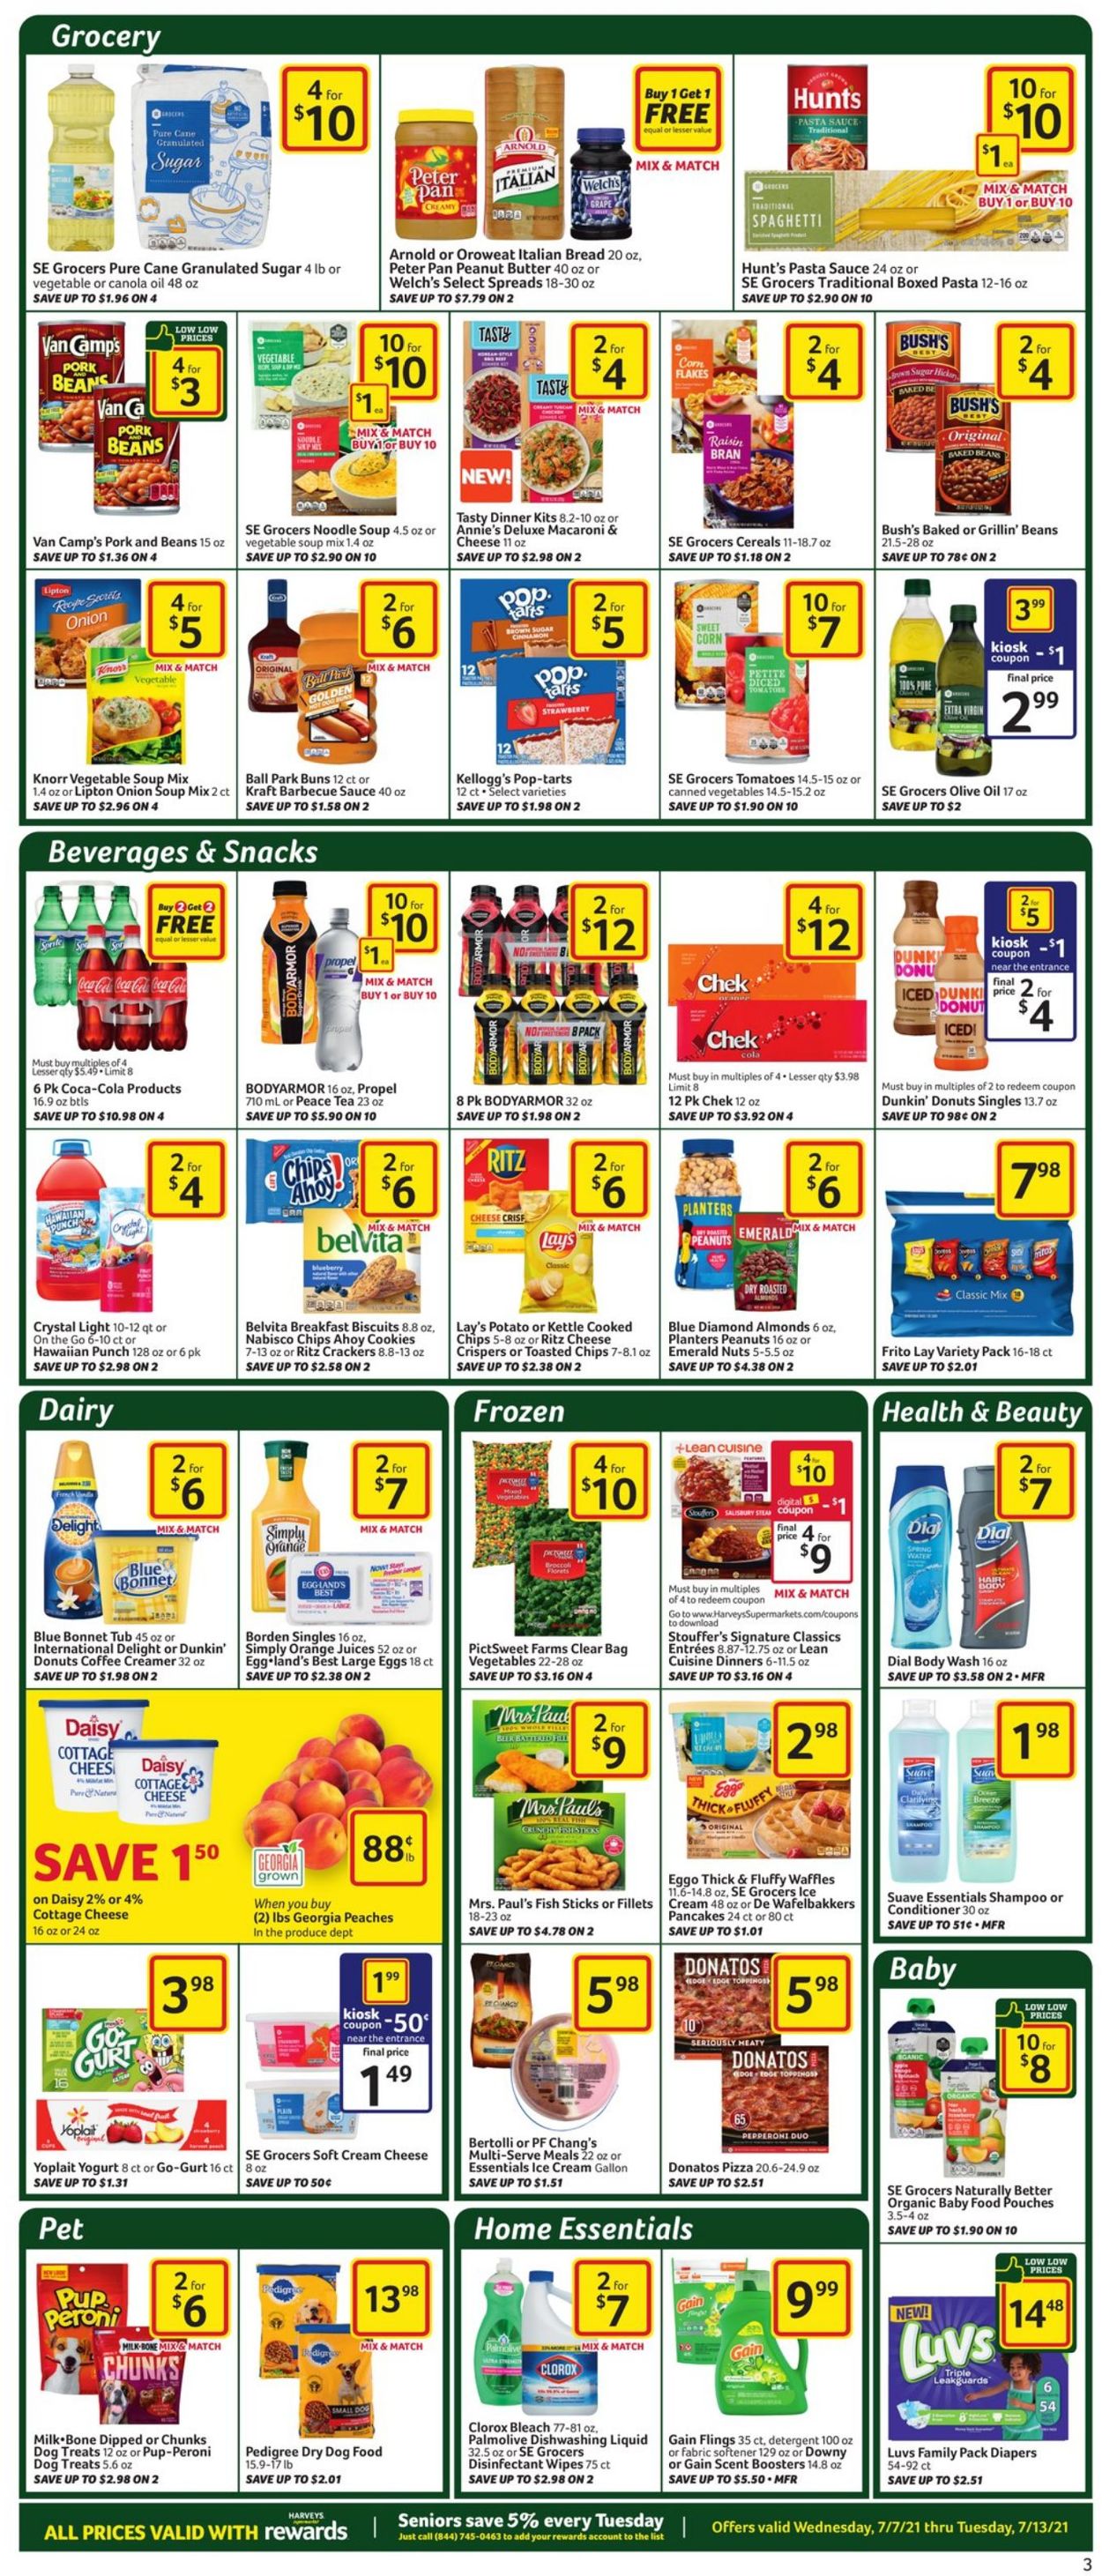 Catalogue Harveys Supermarket from 07/07/2021